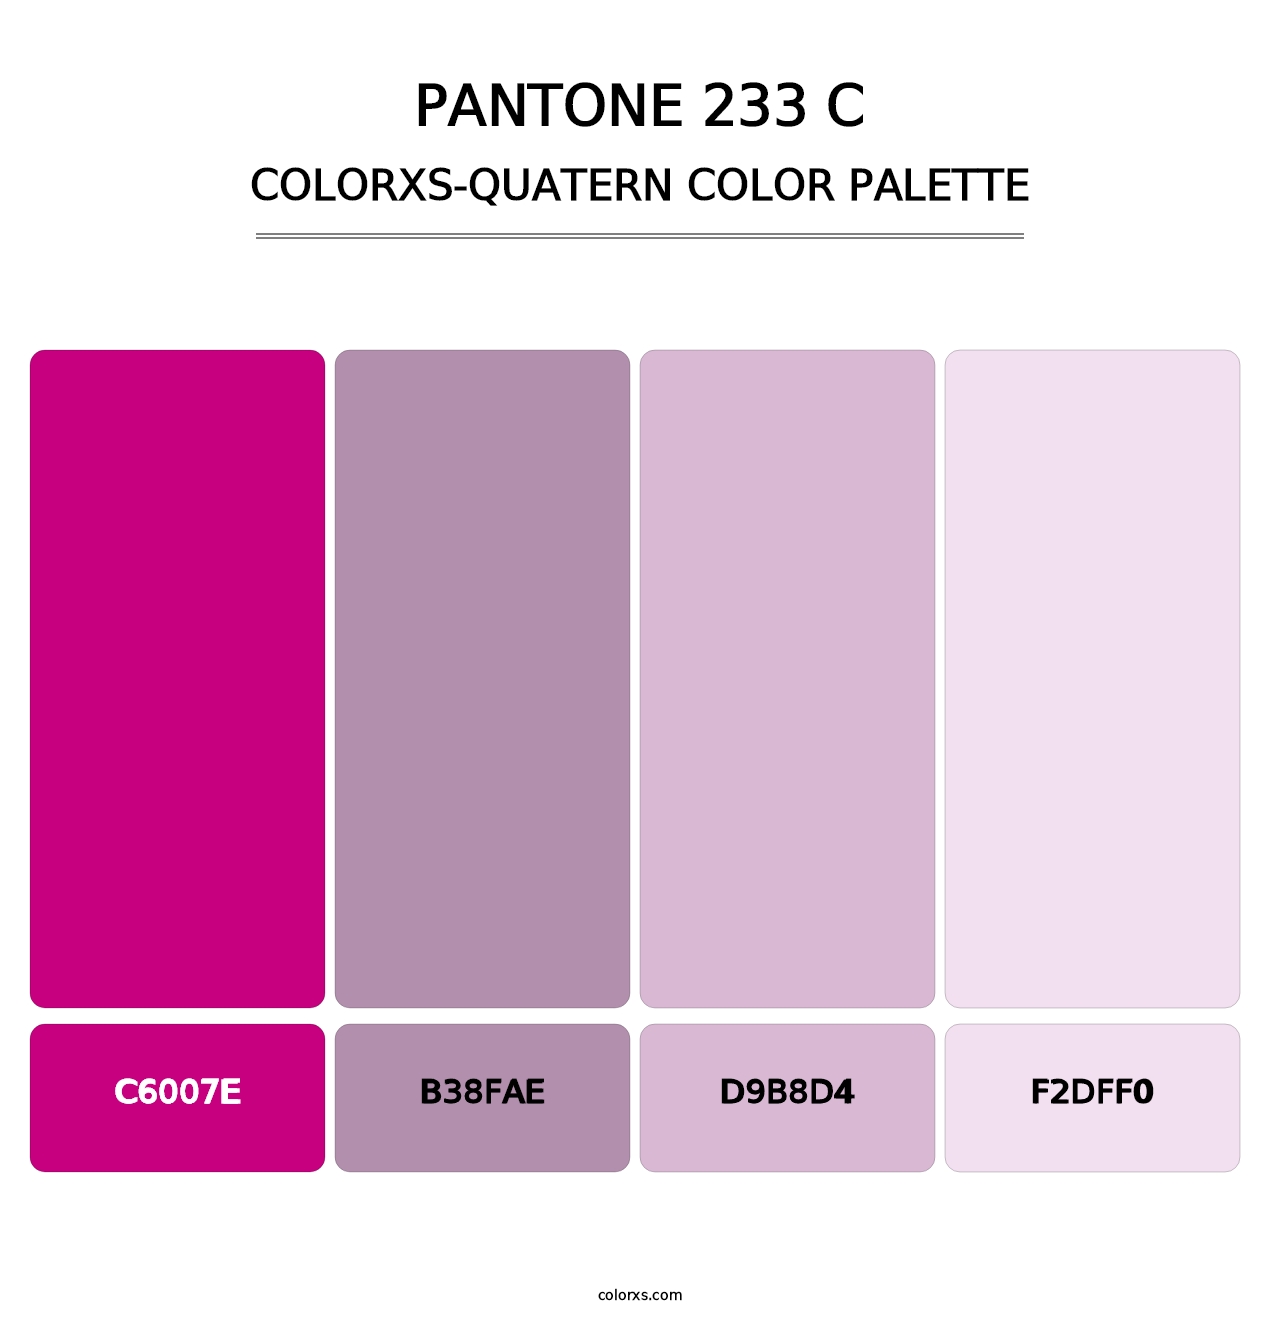 PANTONE 233 C - Colorxs Quatern Palette